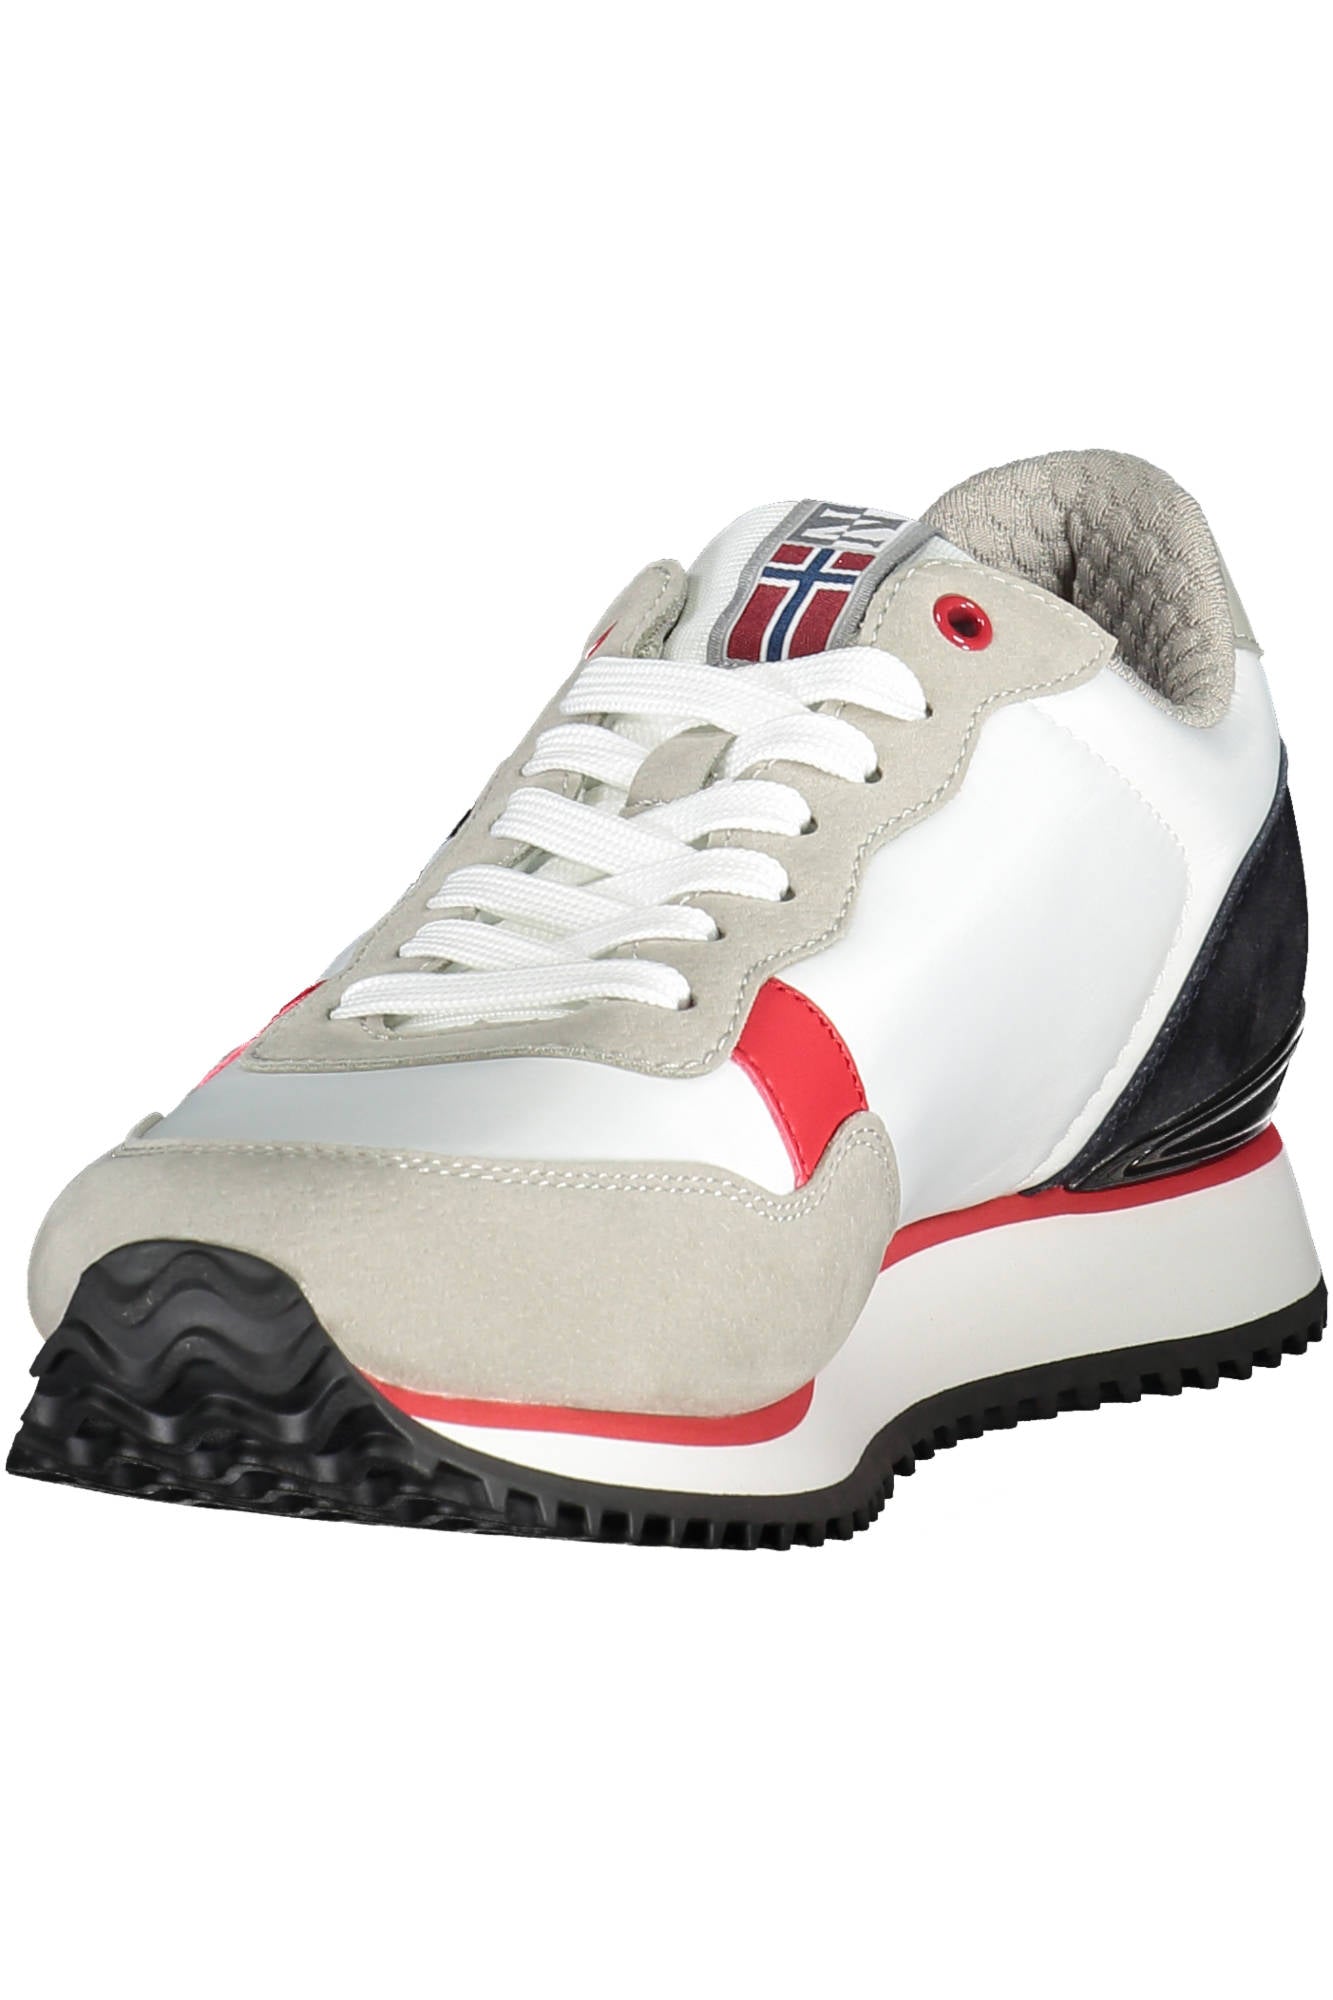 Napapijri White Sneakers - Fizigo